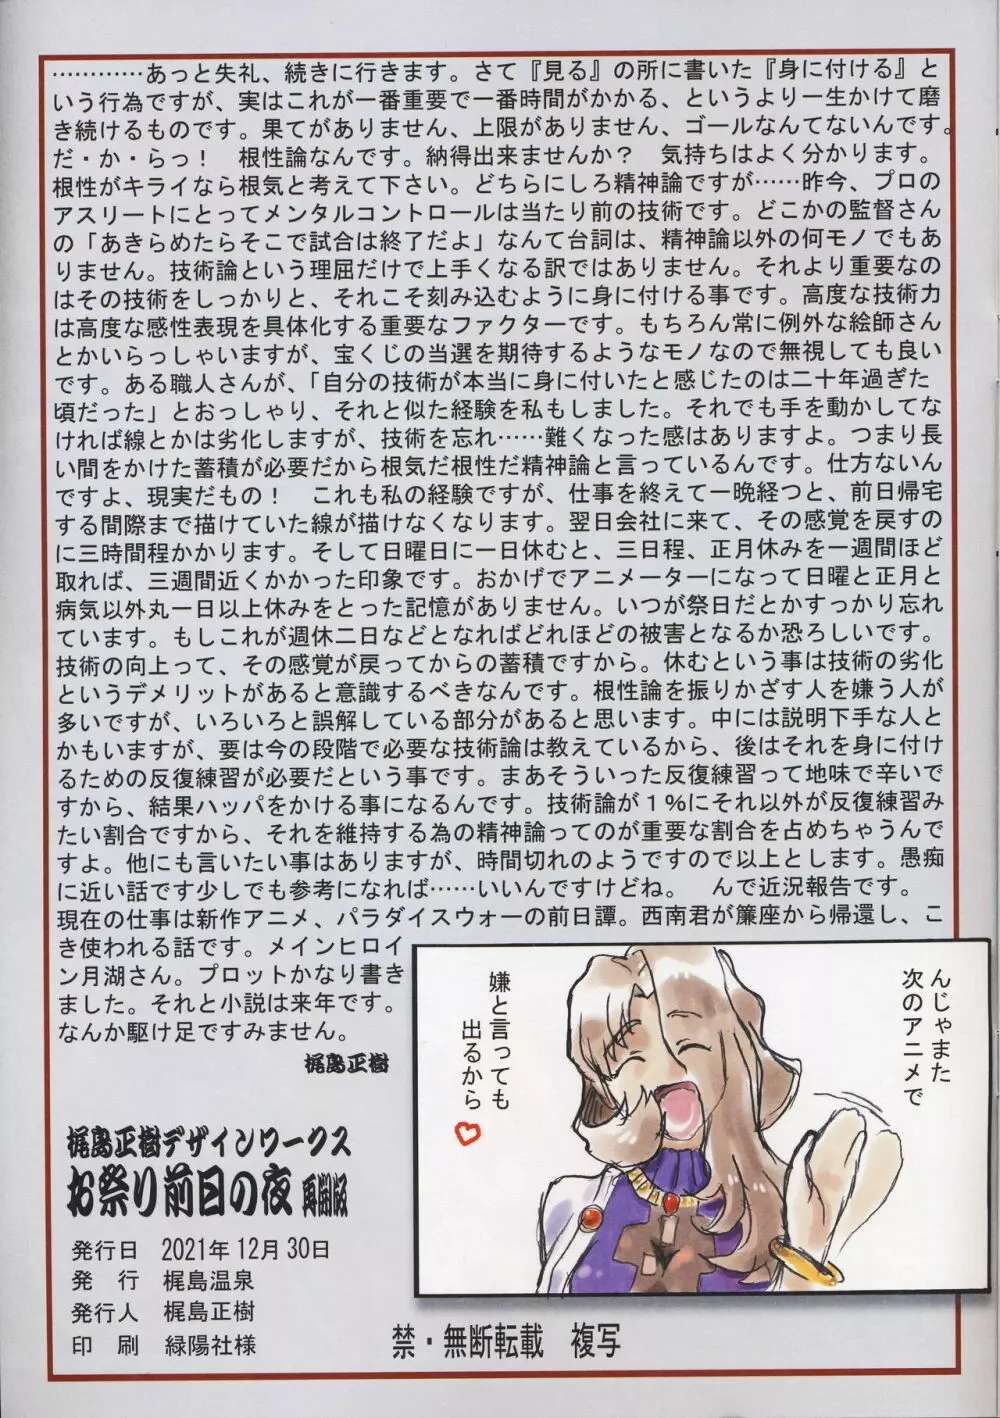 Omatsuri Zenjitsu no Yoru Tenchi Ban 21.12 11ページ